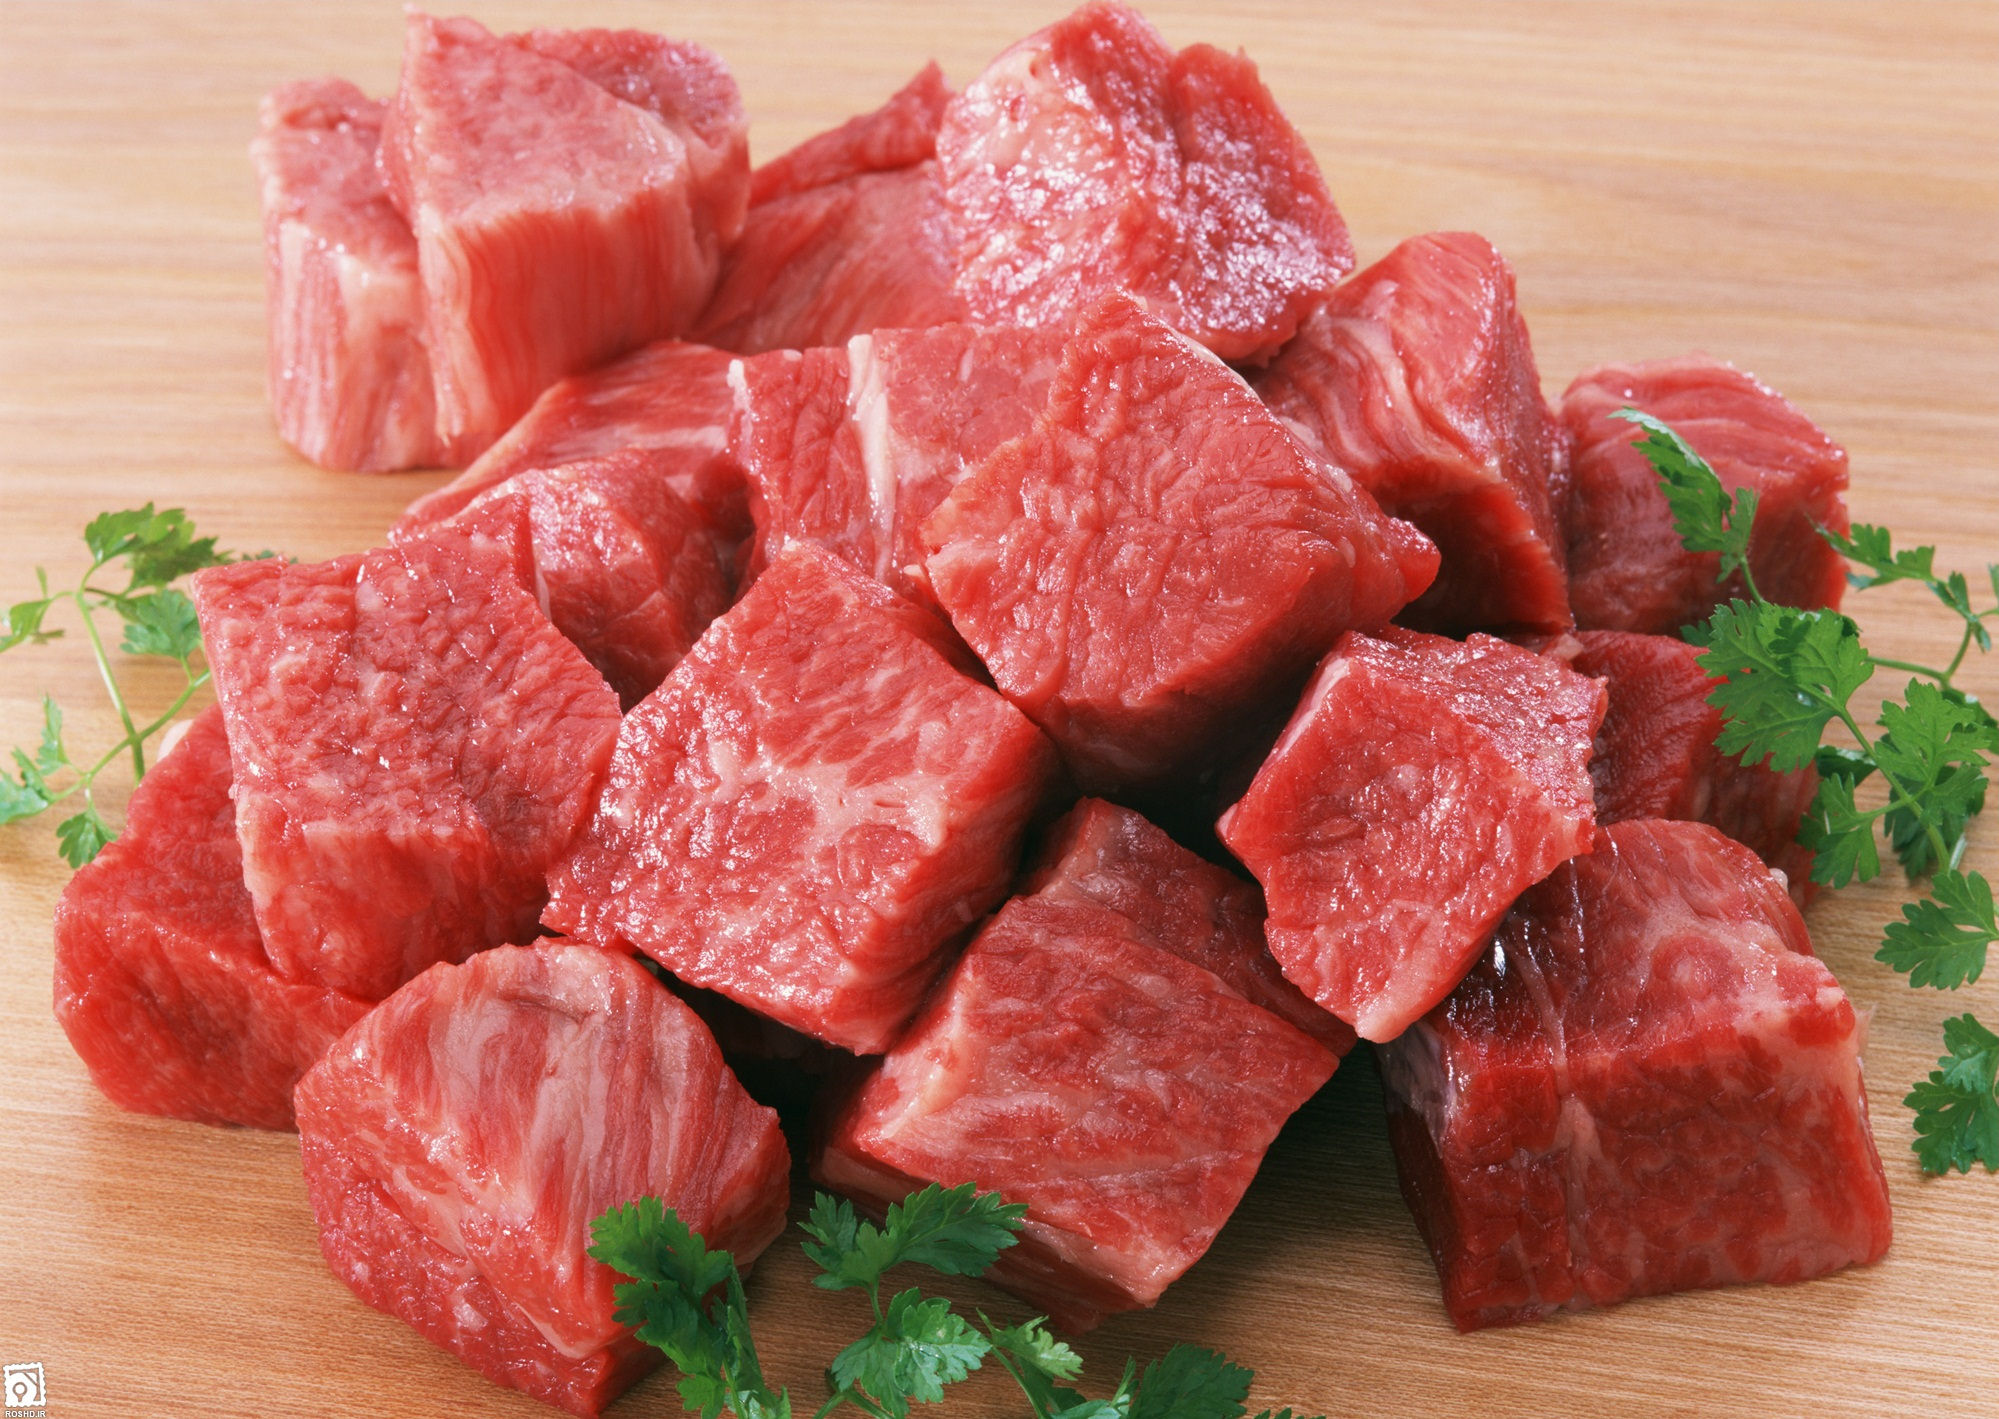 مردم نگران نباشند/گوشت قرمز برزیلی وارداتی از بهترین گوشت های دنیا است